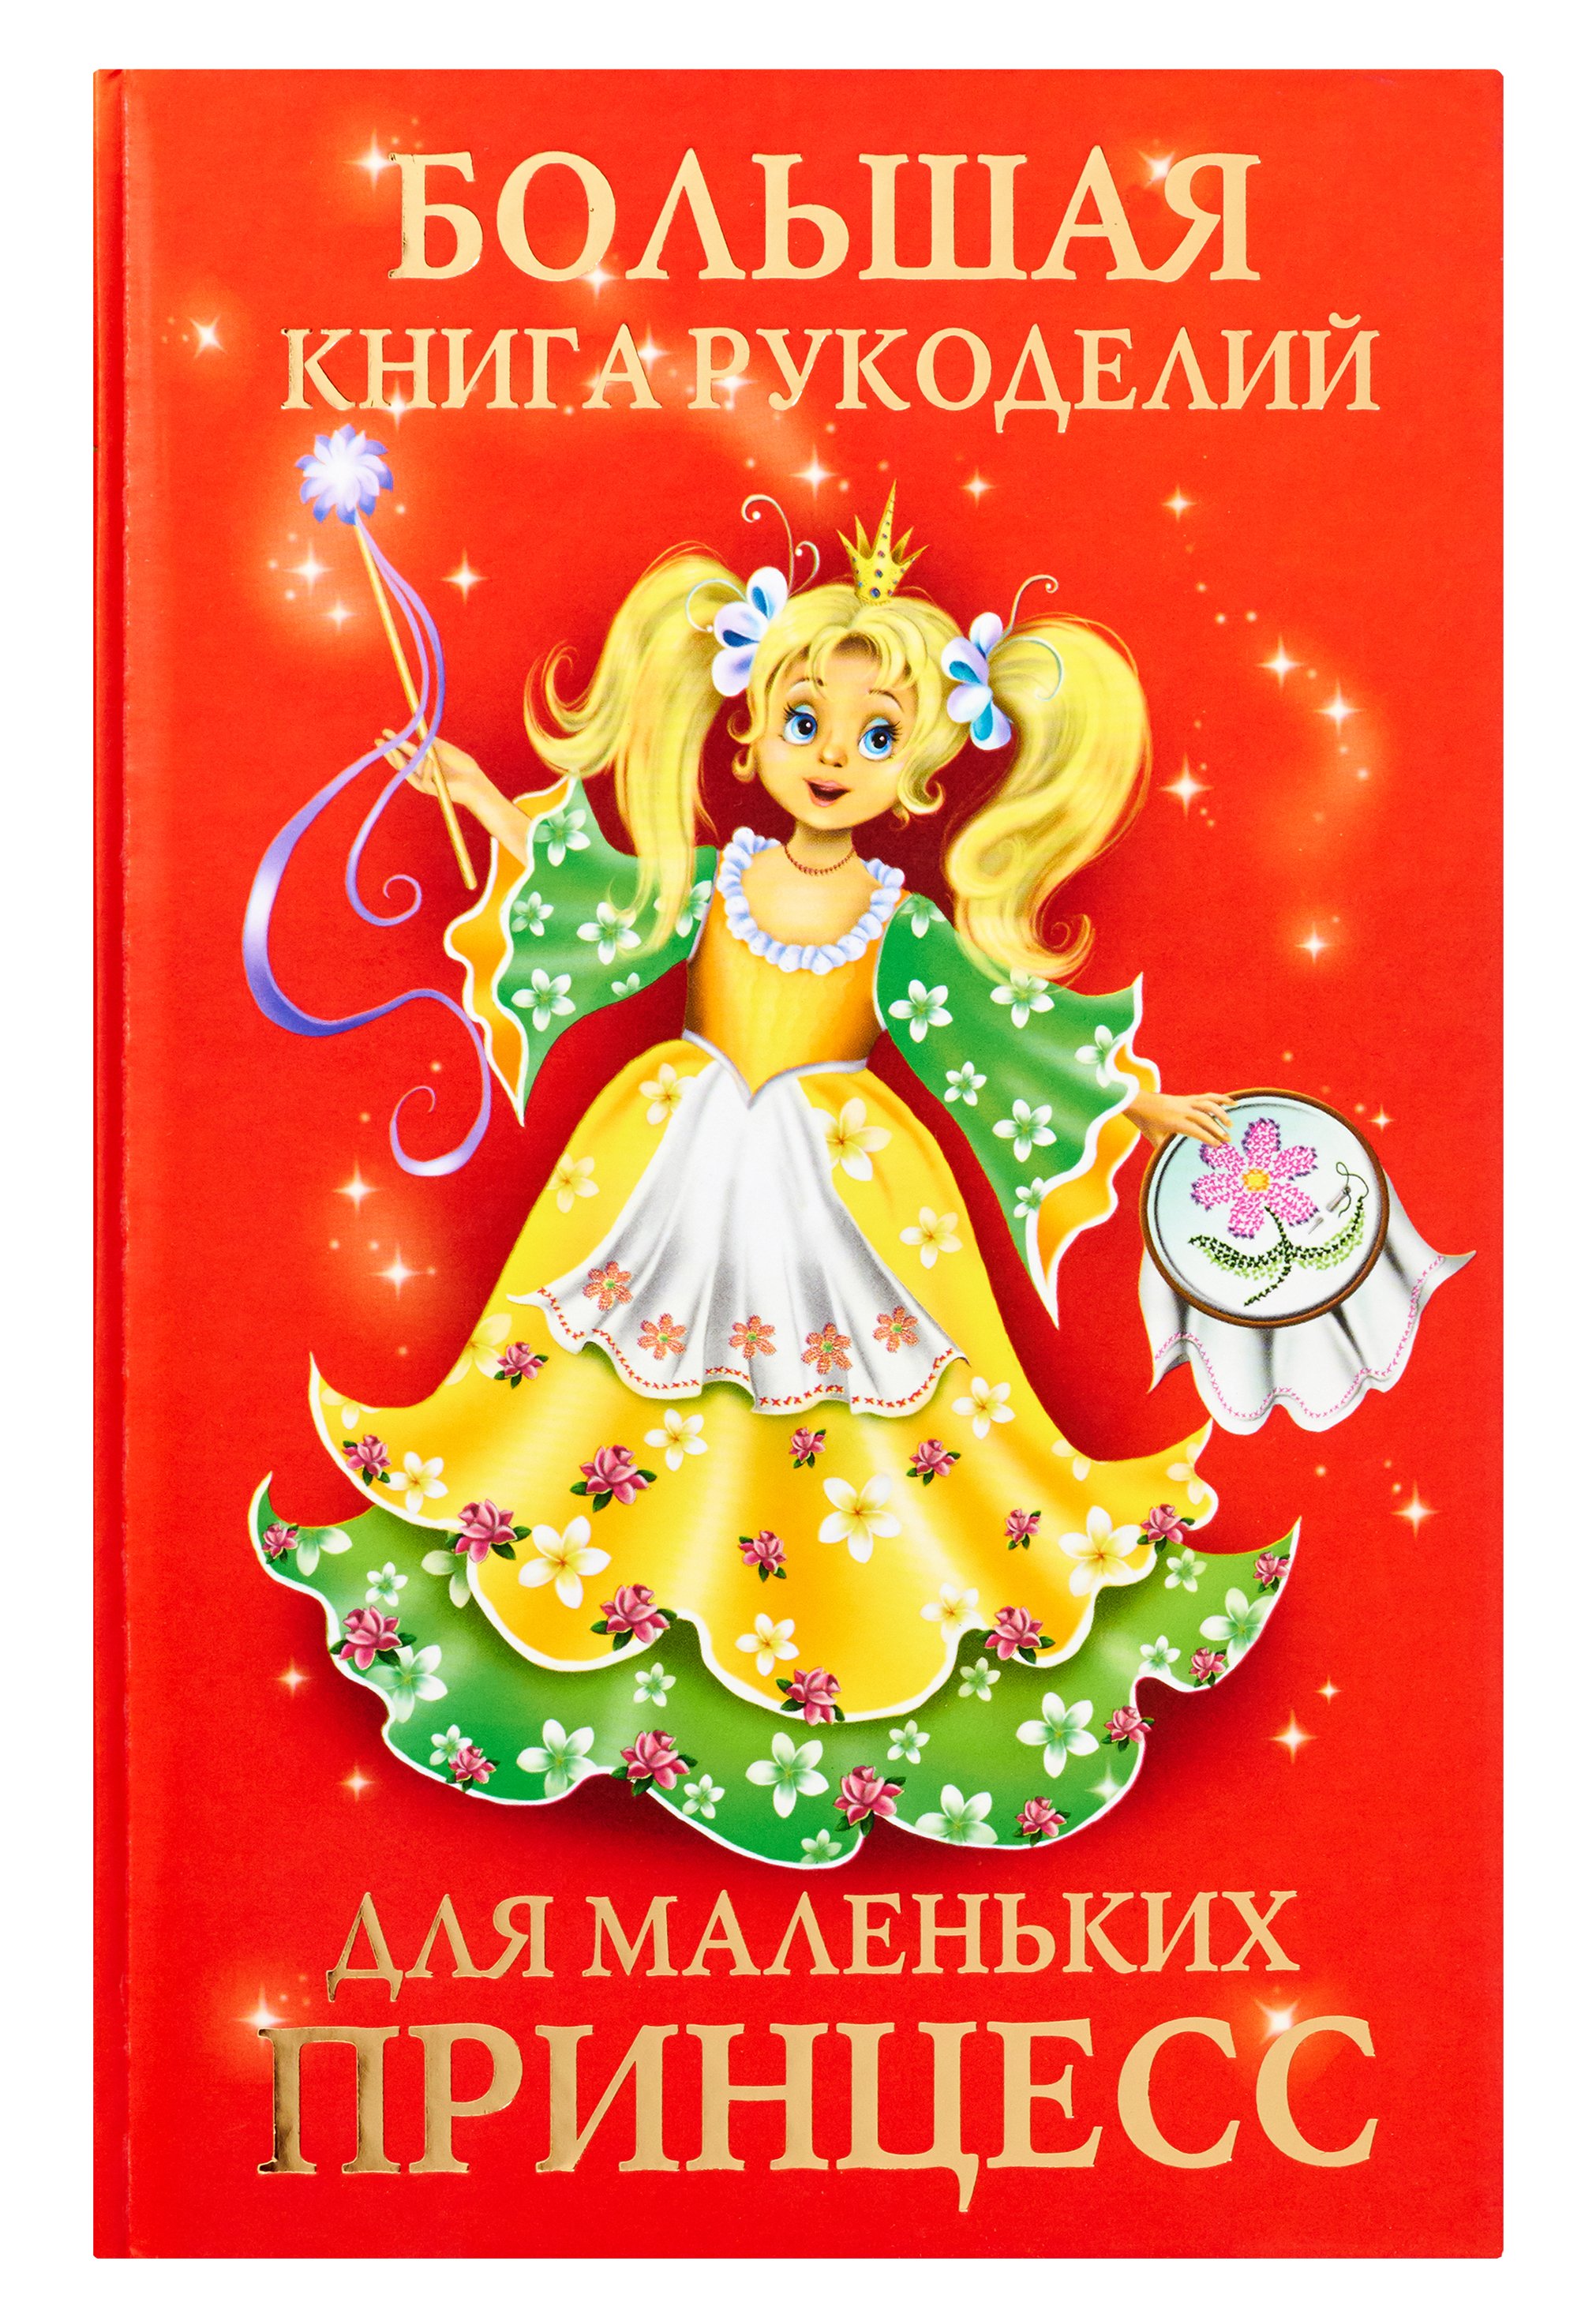 Большая книга рукоделий для маленьких принцесс. Виноградова Е.Г.